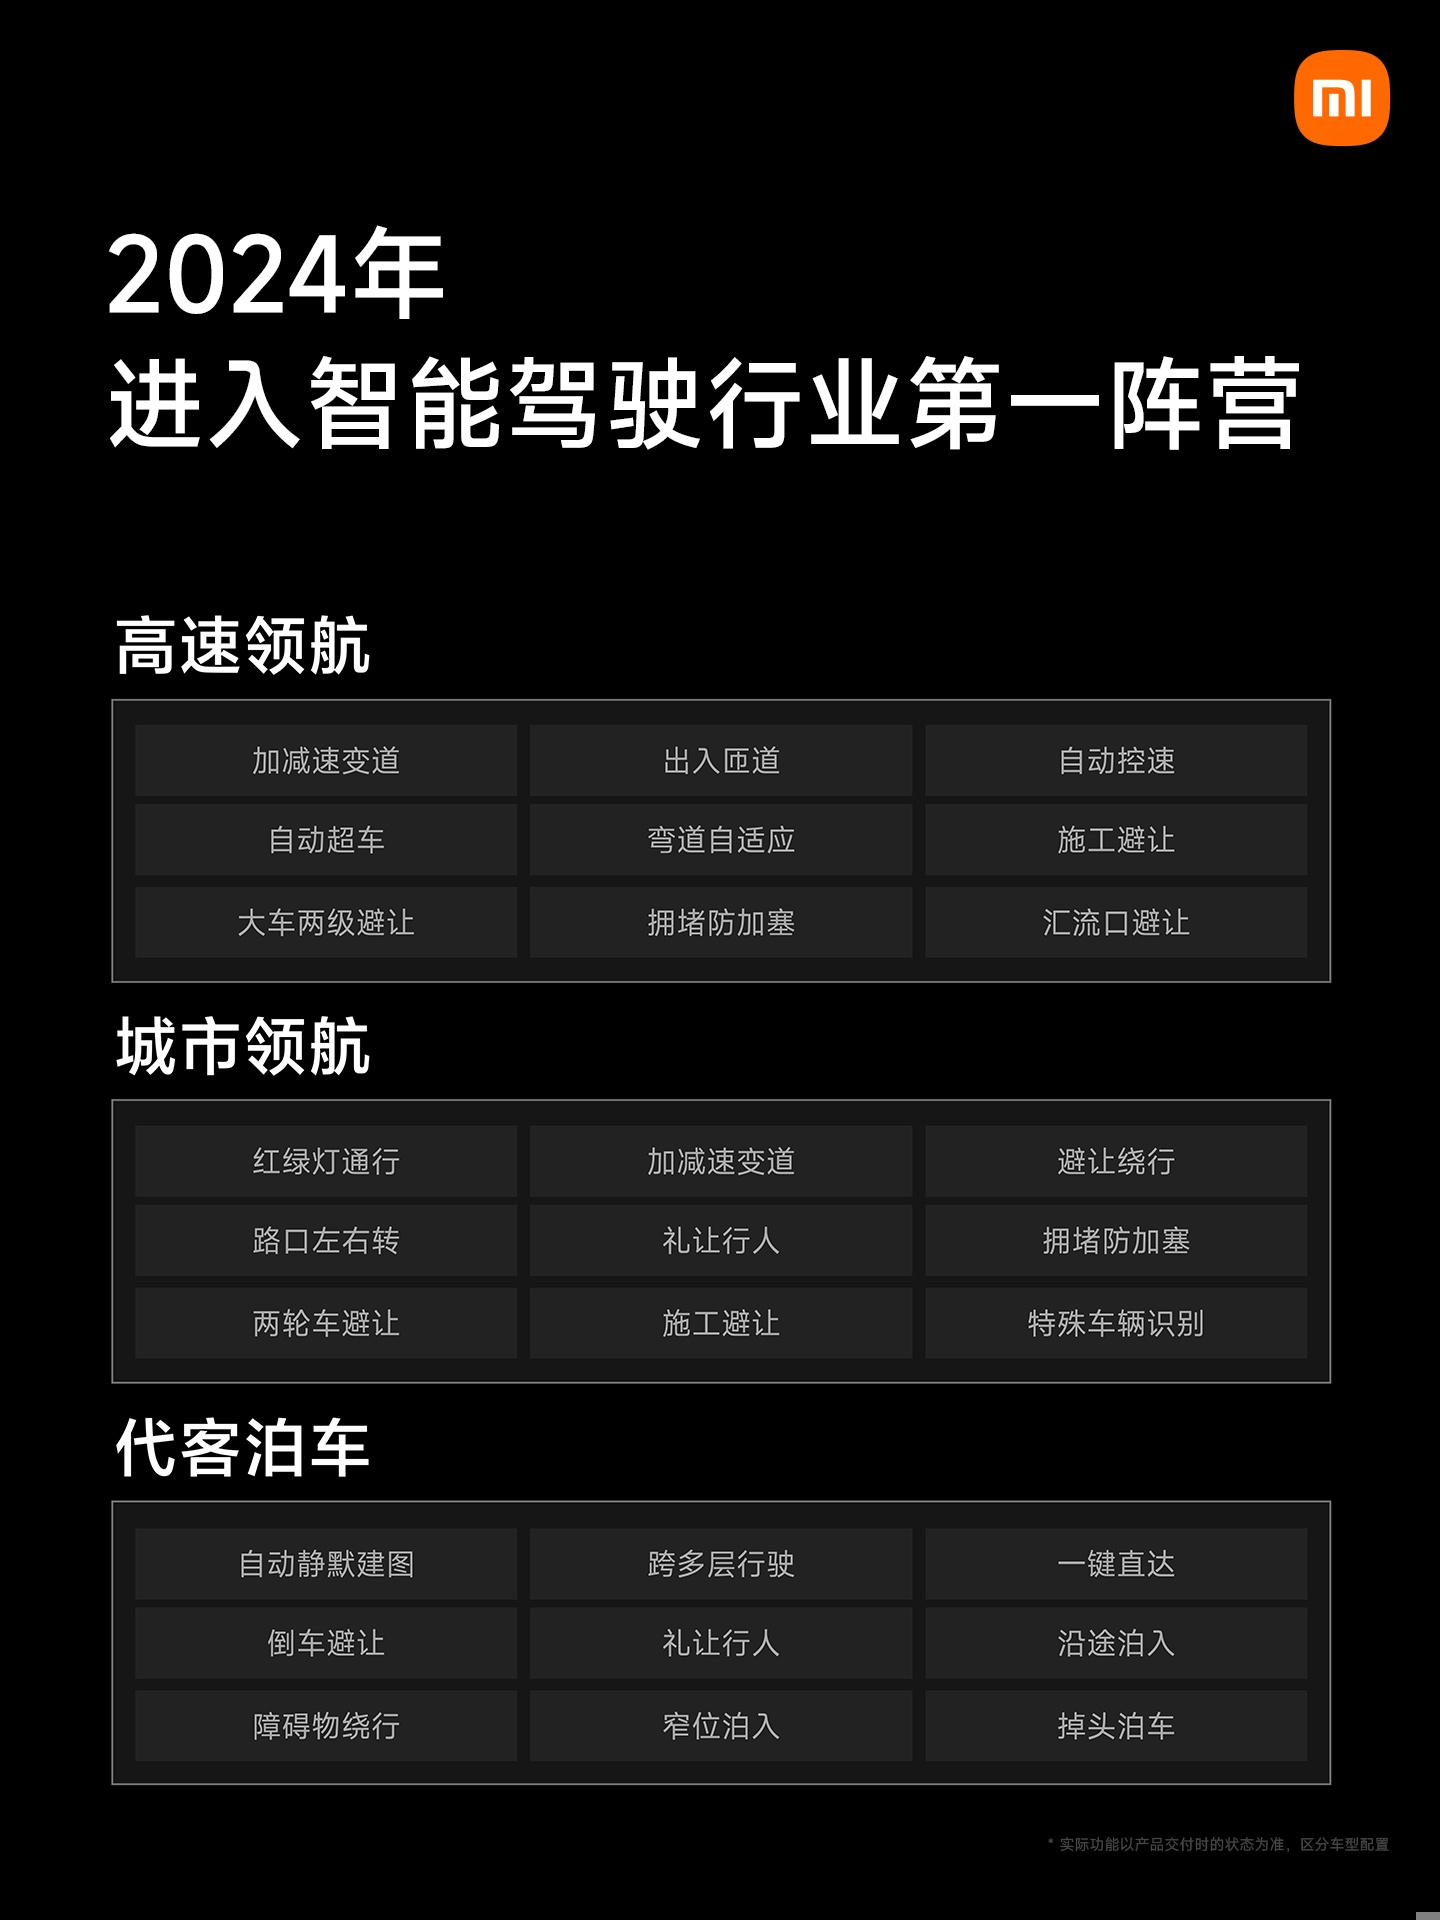 上海现小米汽车交付中心 已有展车到店 - Xiaomi 小米 - cnBeta.COM